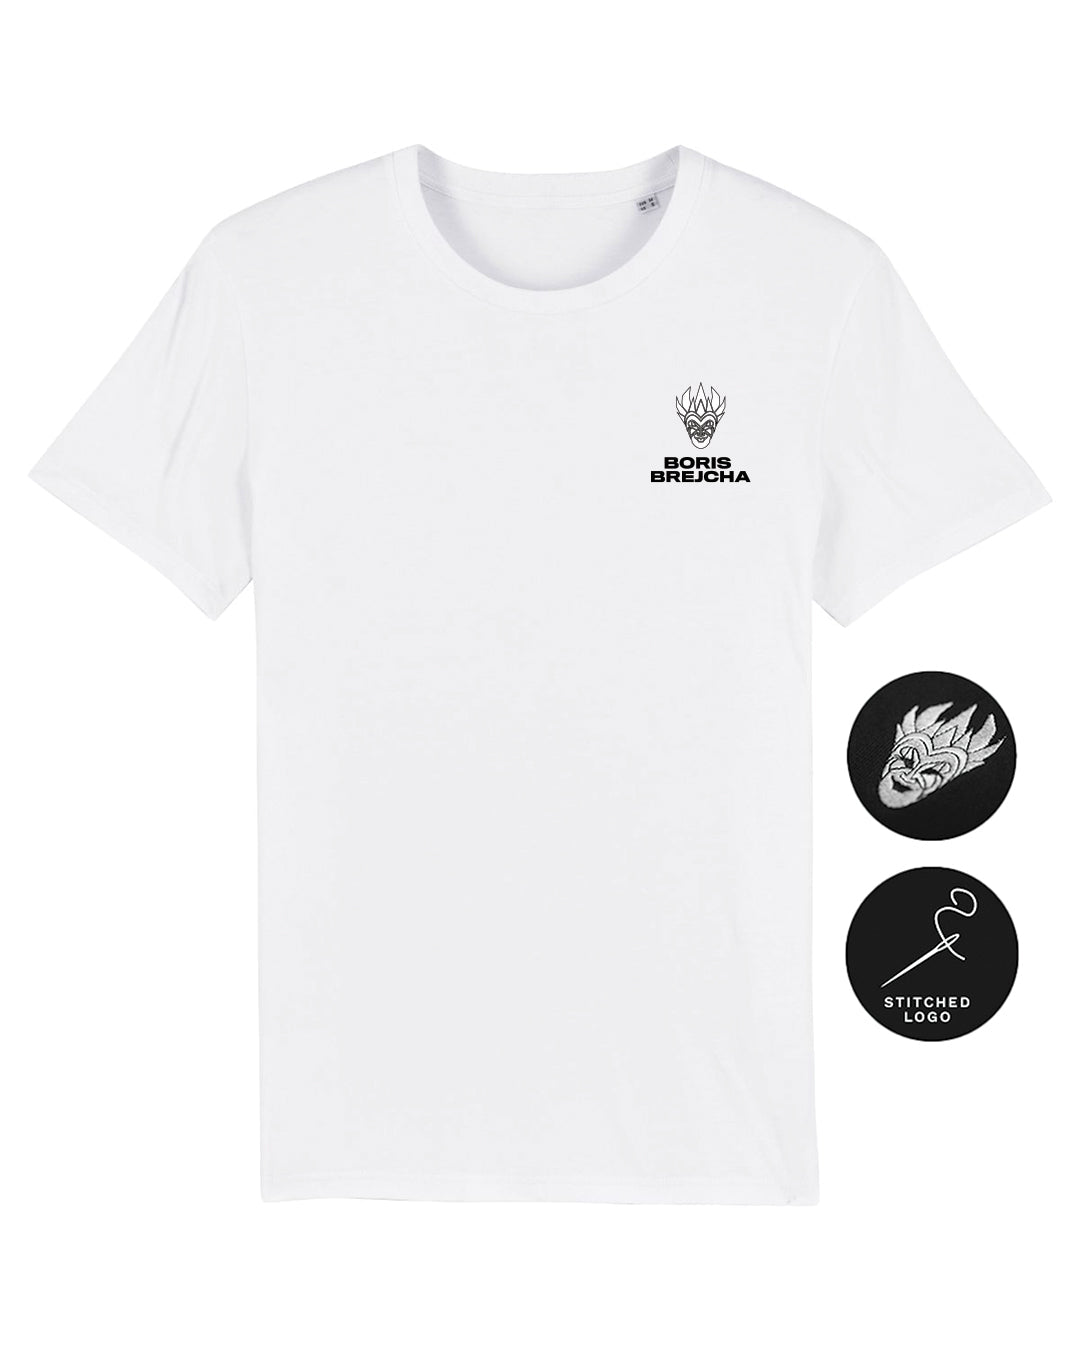 Boris Brejcha - Mini Logo T-Shirt white (Stitched Logo)